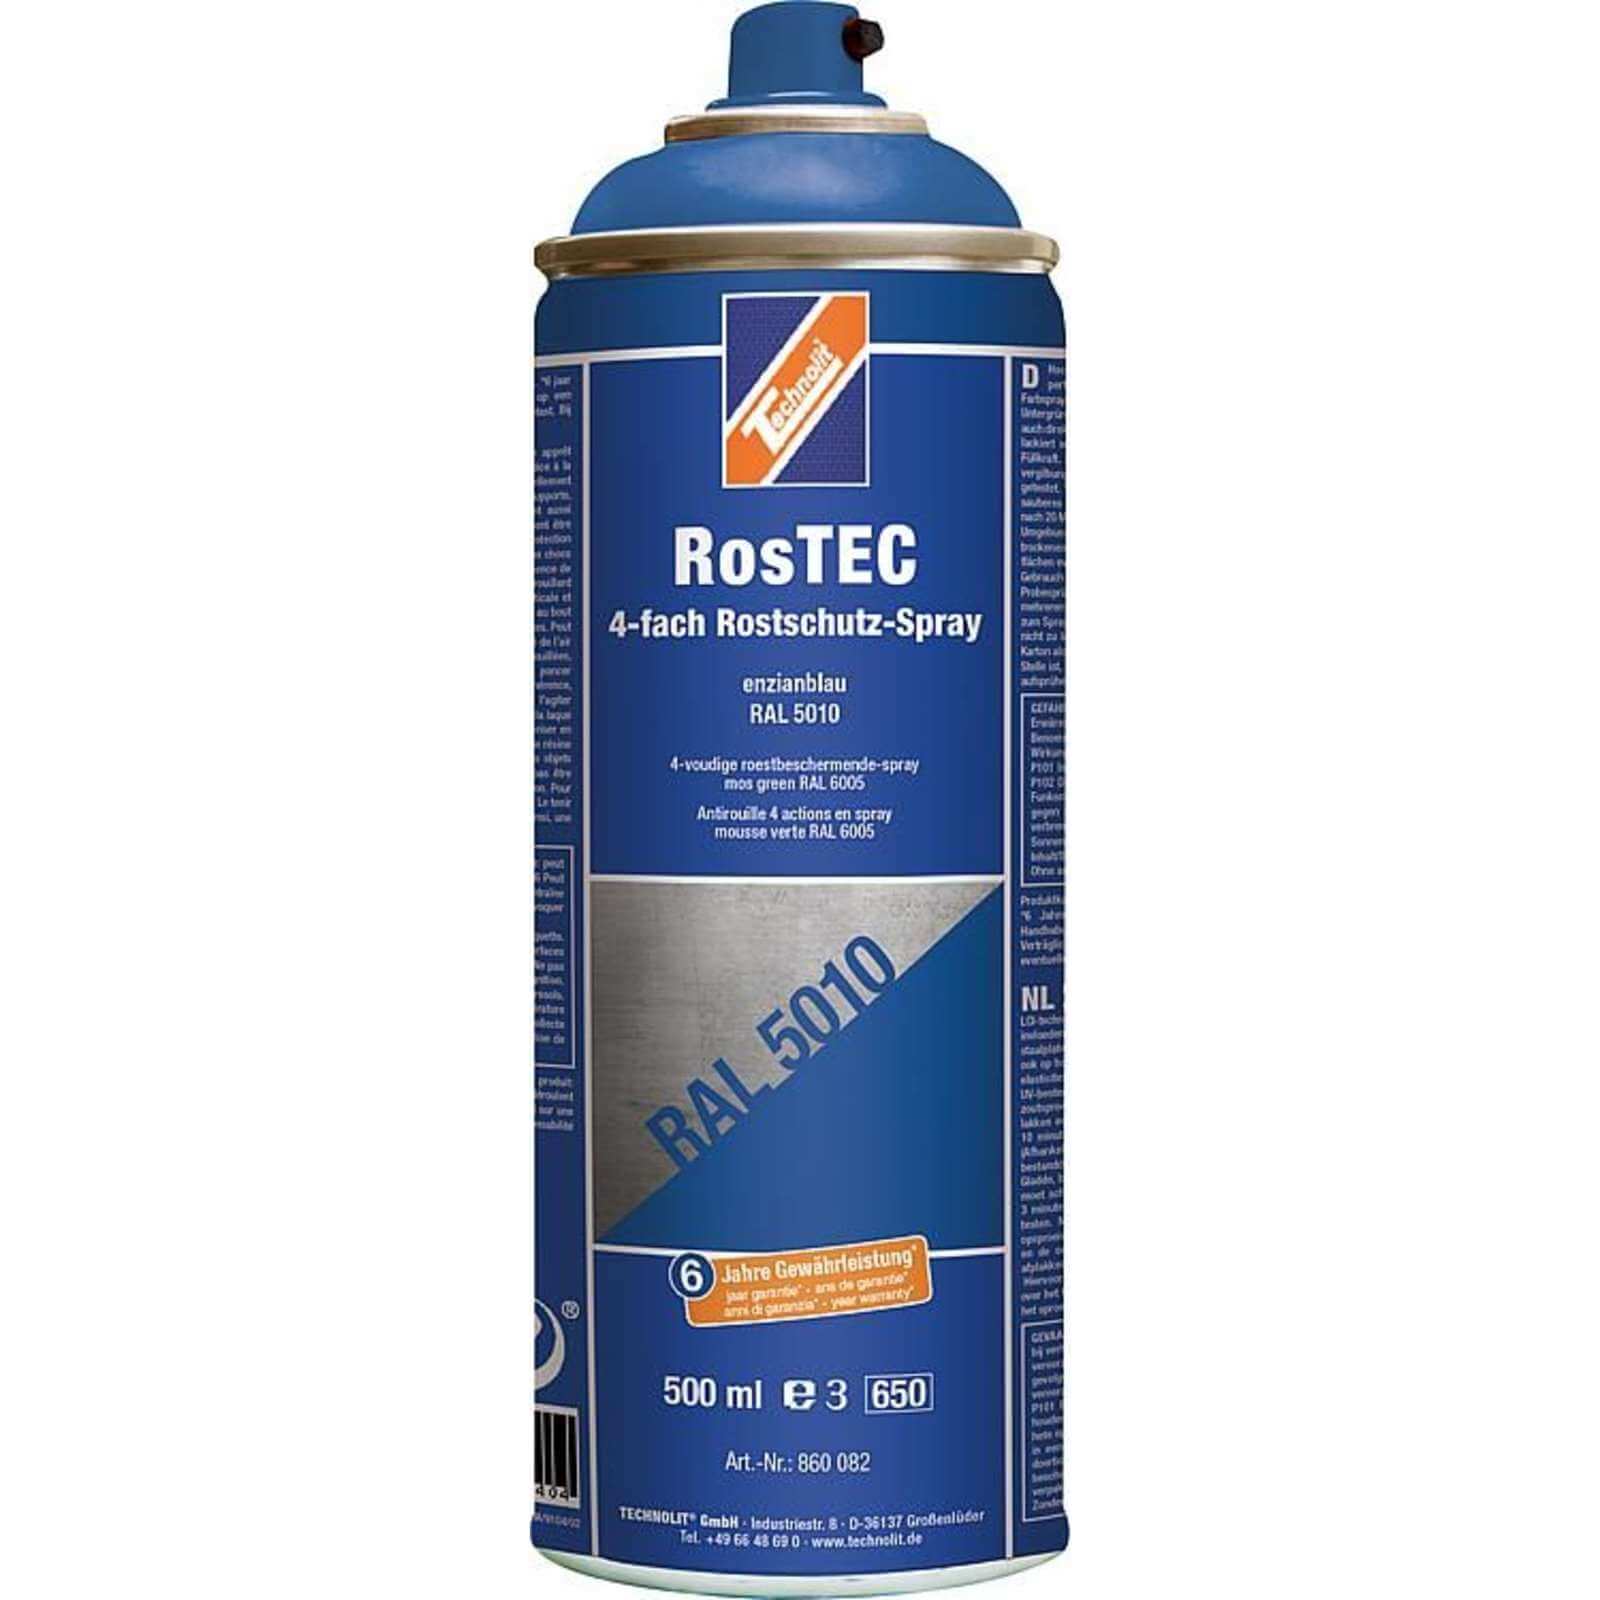 TECHNOLIT Rostschutz Spray RosTEC 4-Fach, Farbspray Korrosionsschutz Grundierung Farbe:enzianblau von TECHNOLIT